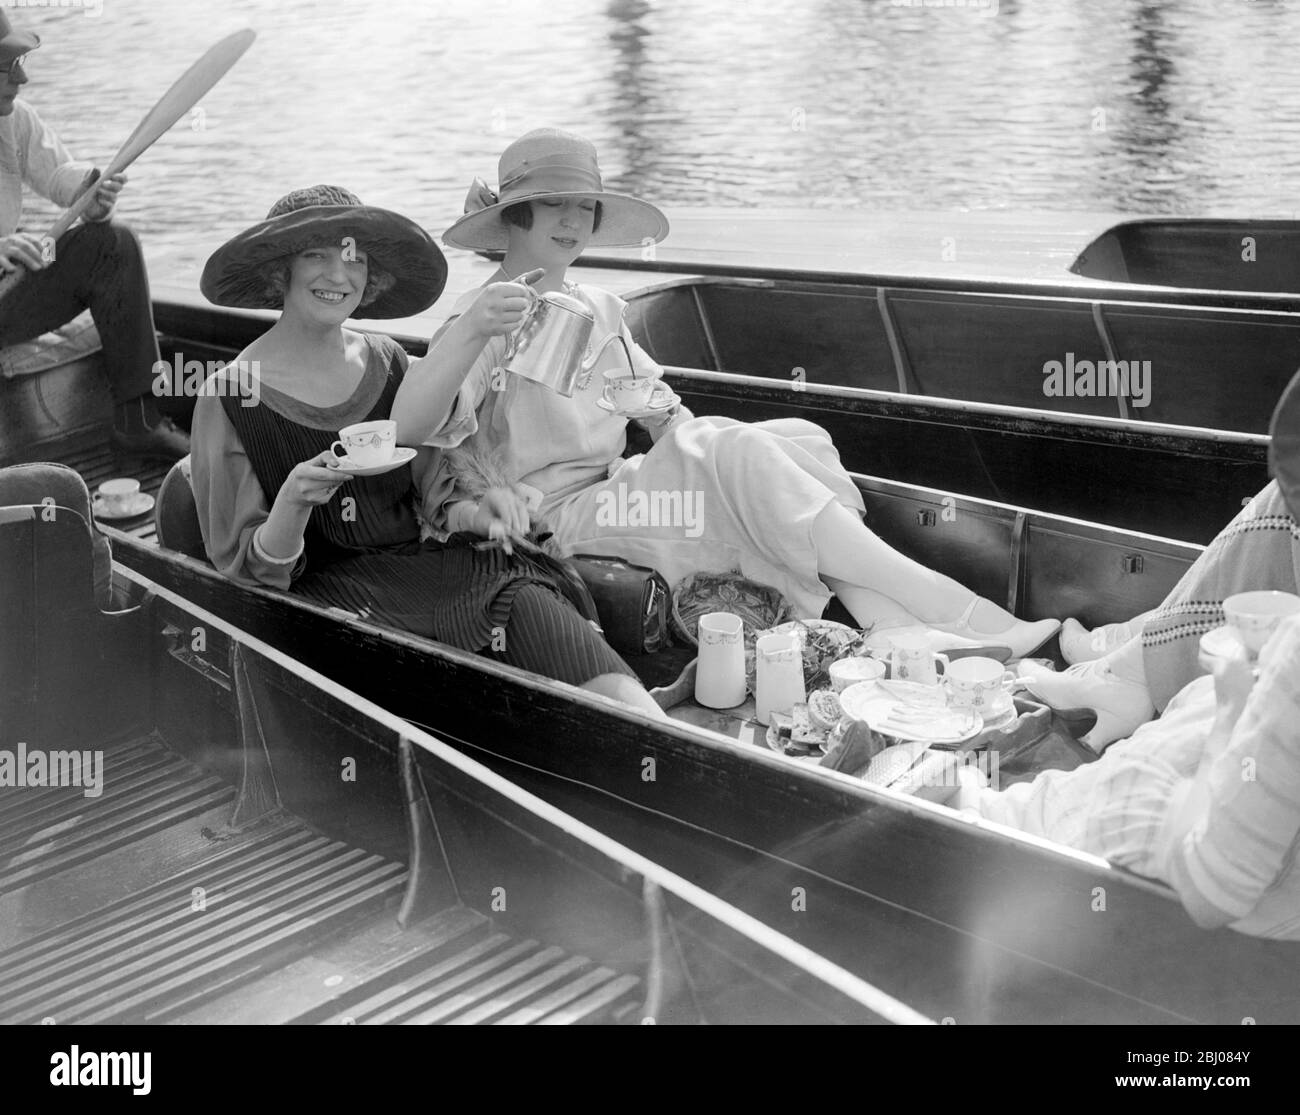 Una góndola hace su primera aparición de la temporada en el Karsino, Hampton Court. Es fletado por una fiesta de las muchachas del Hippodrome de Londres de Brightter. - Alfieri, 6 de mayo de 1923 - - - - - - - - - - - - - - - - Foto de stock